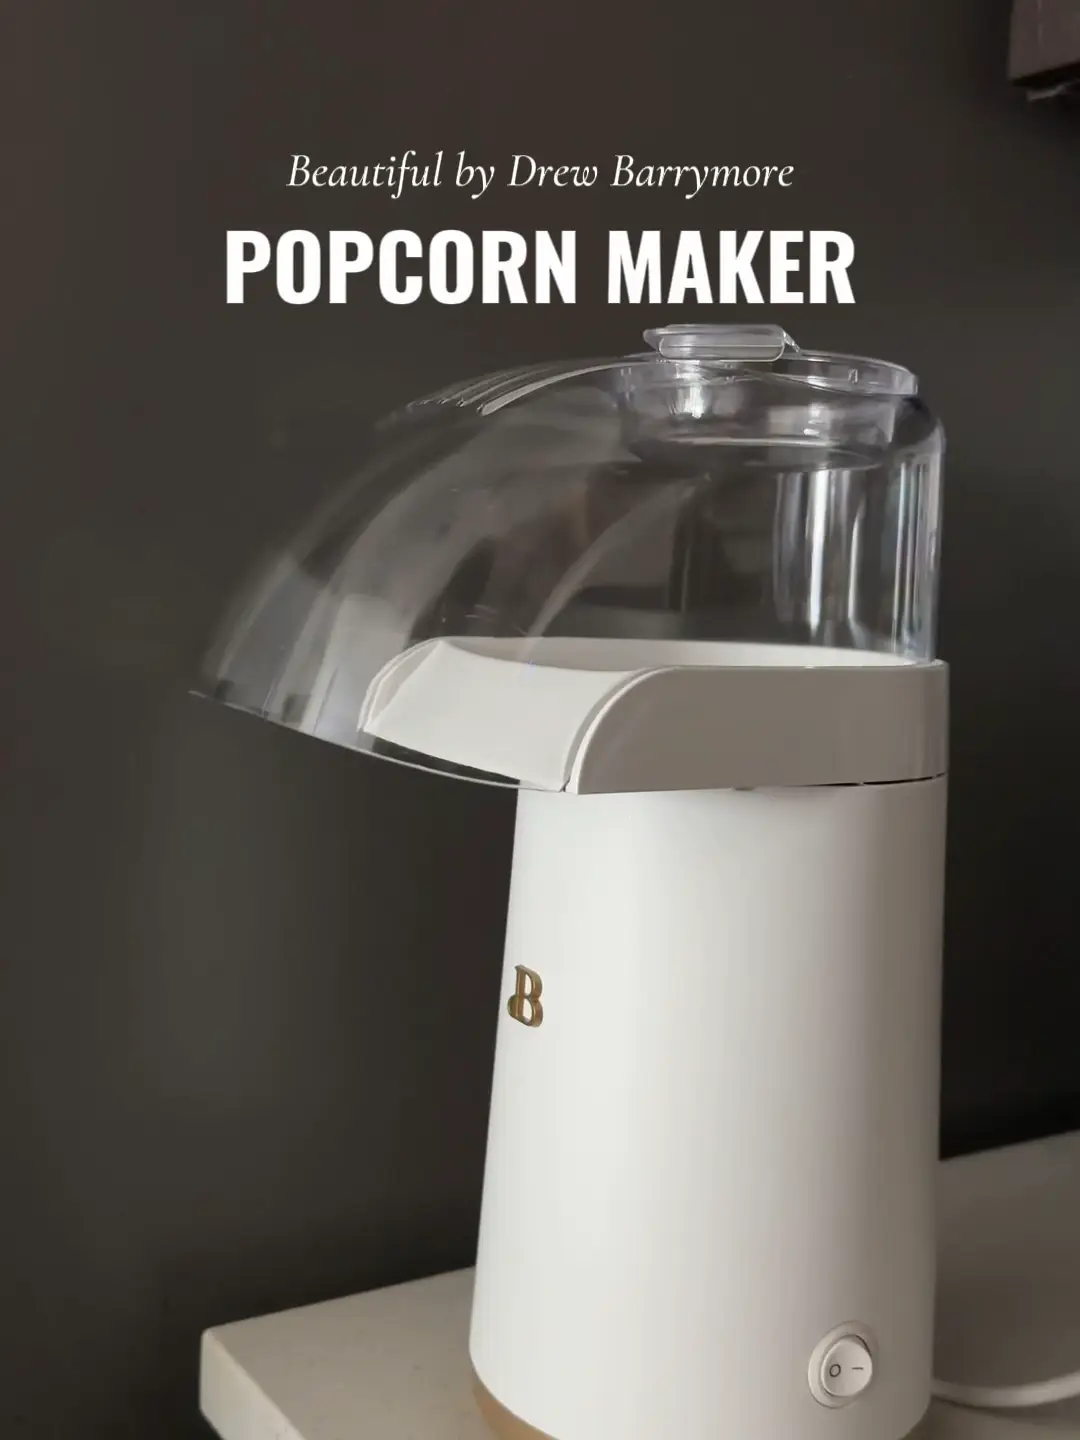 FREE Paris Hilton Popcorn Makers & Cookware Line